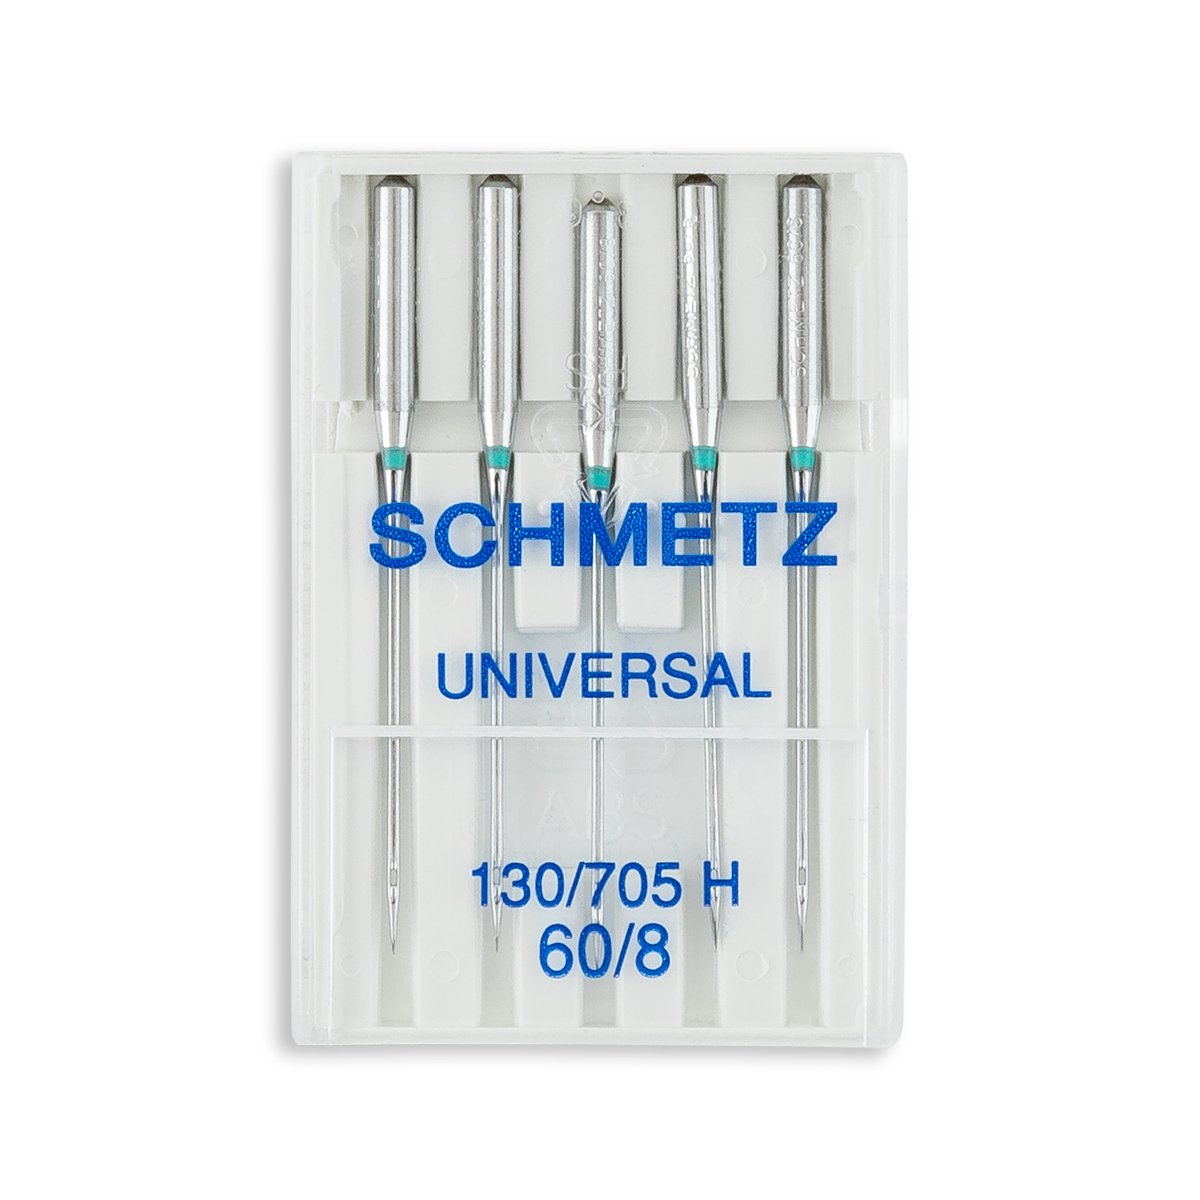 25 Schmetz Assorted Universal Sewing Machine Needles 130/705H 15x1H Sizes  70/10, 80/12, 90/14, 100/16